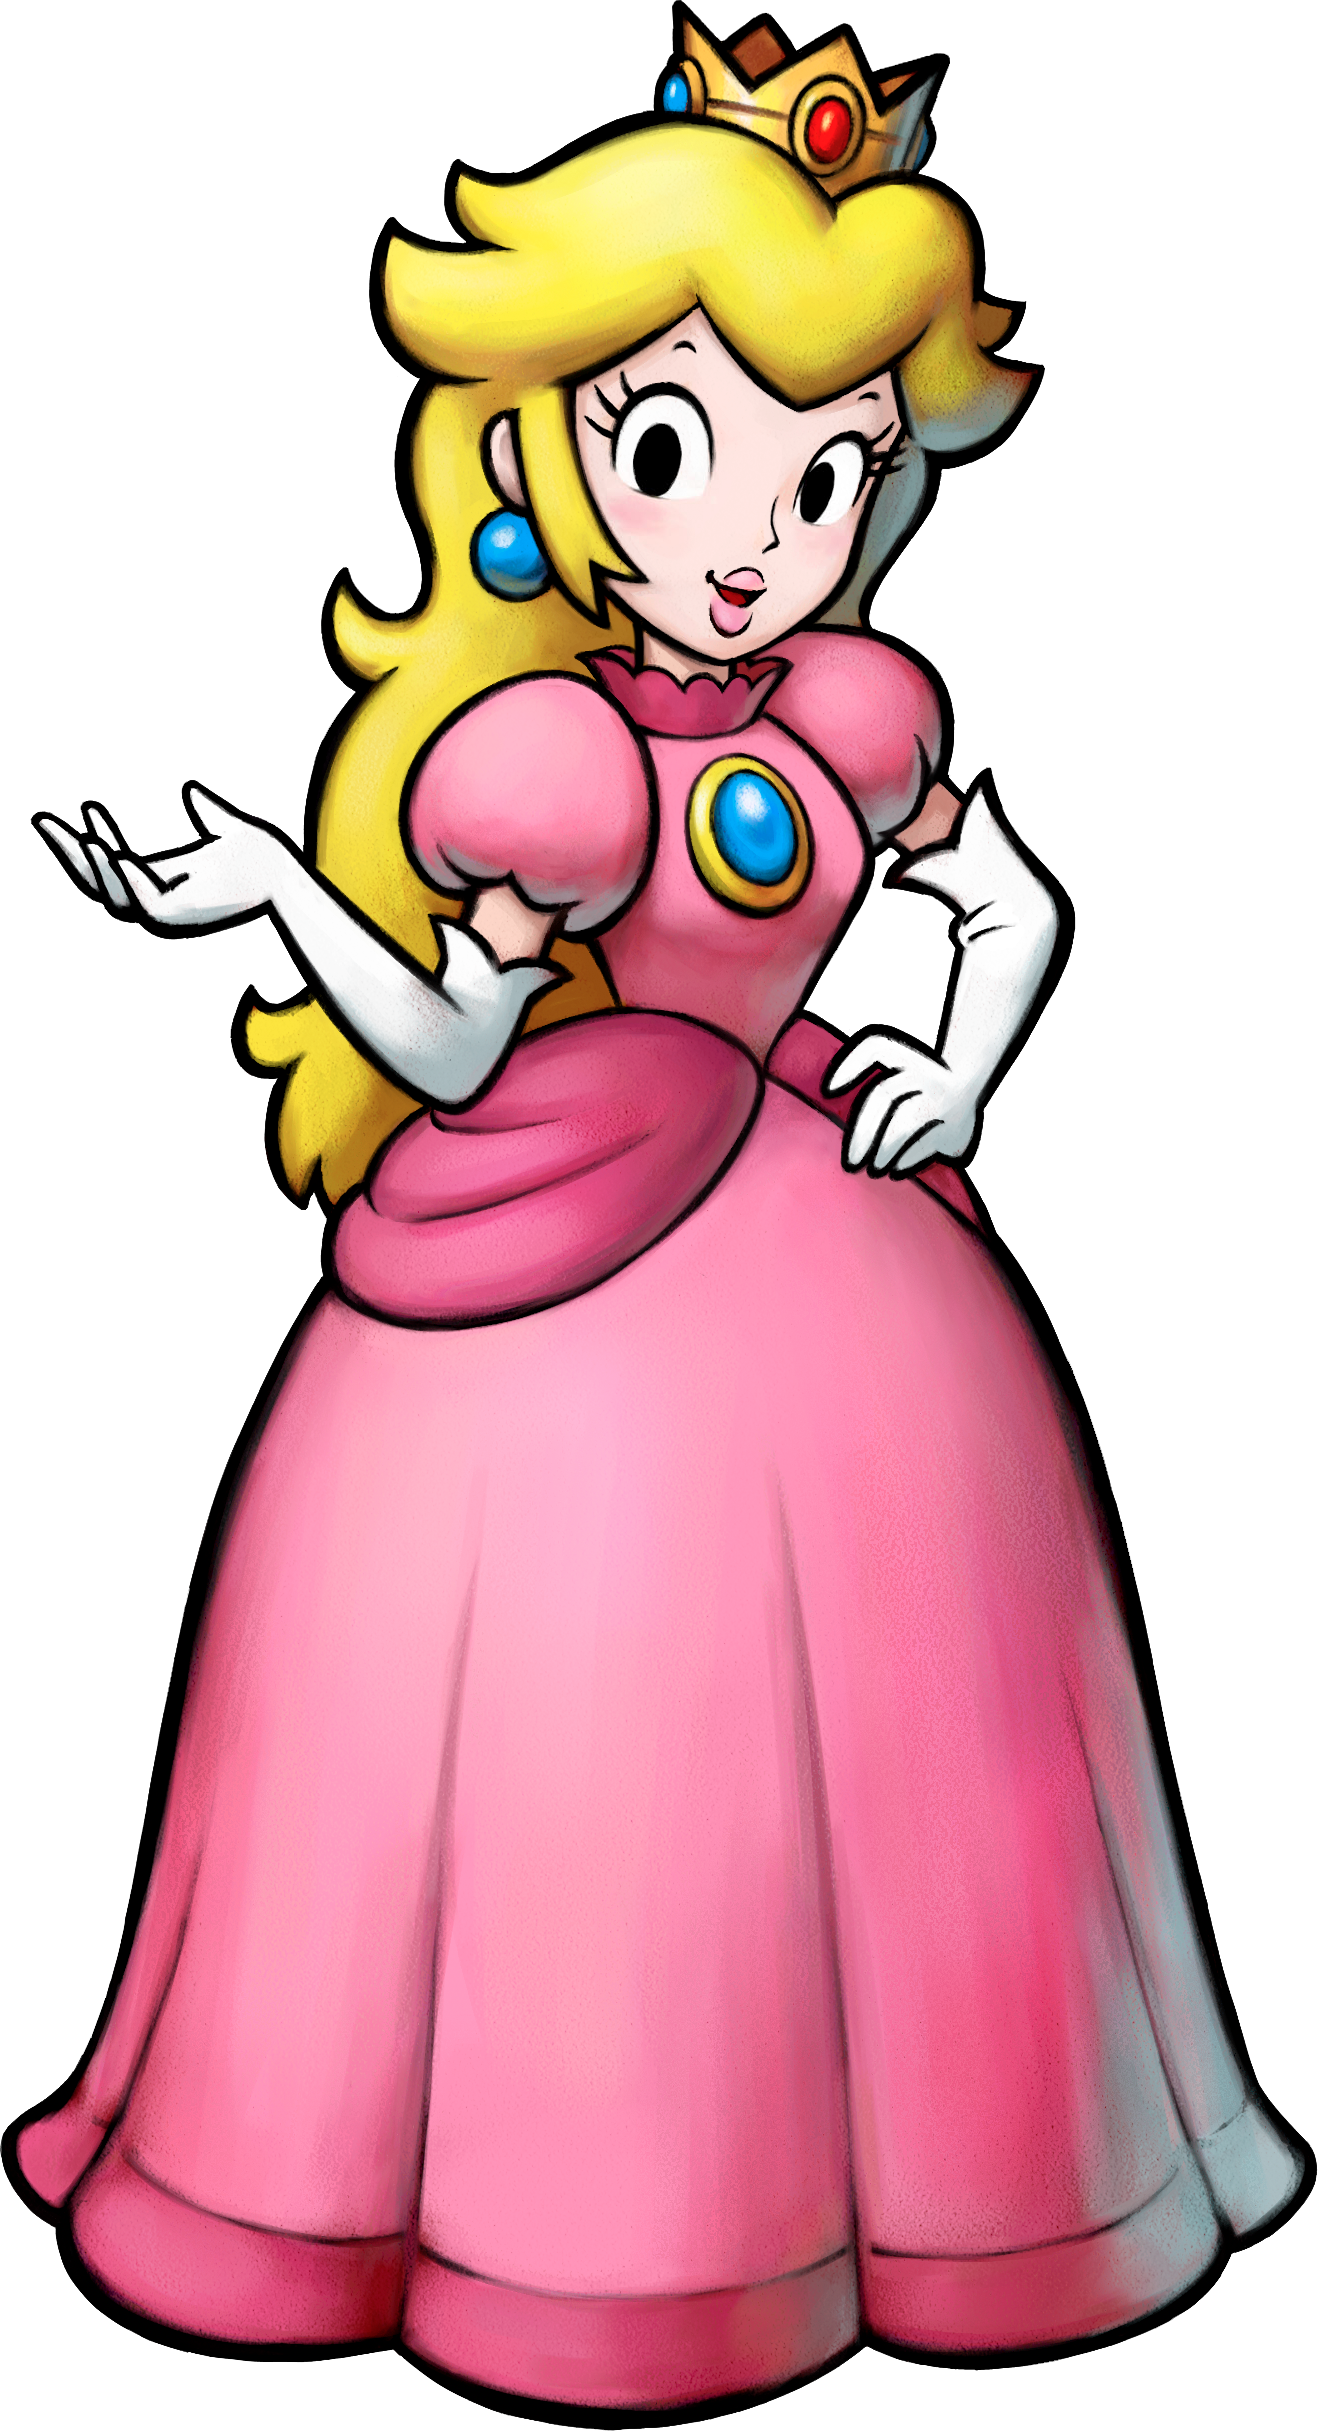 Mario Princess Peach - Princess Peach Mario And Luigi Partners In Time (1318x2431)